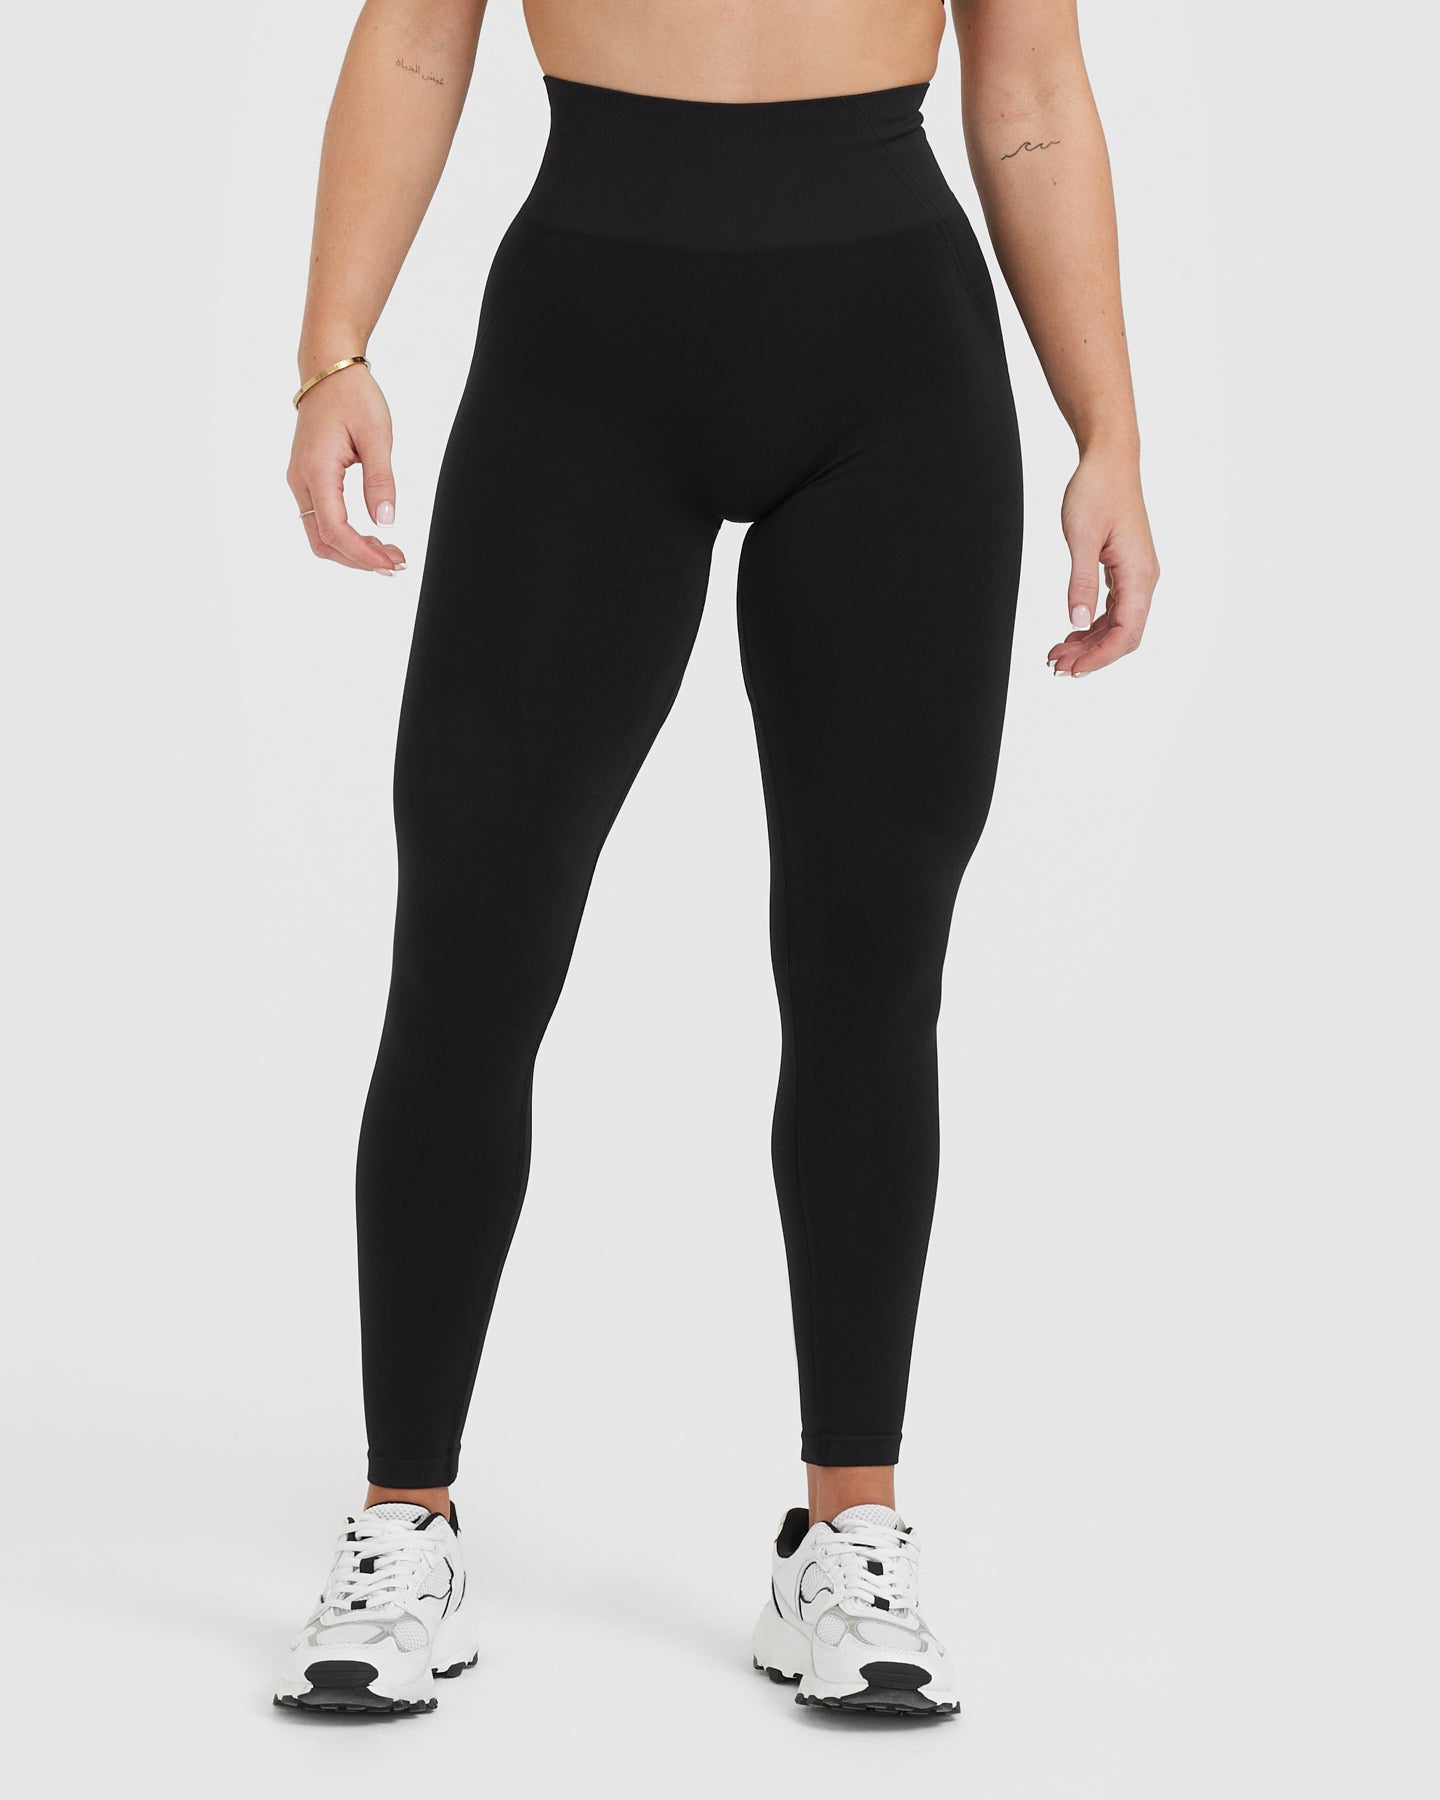 Nike Just Do It Cross Back High Waisted leggings in Black